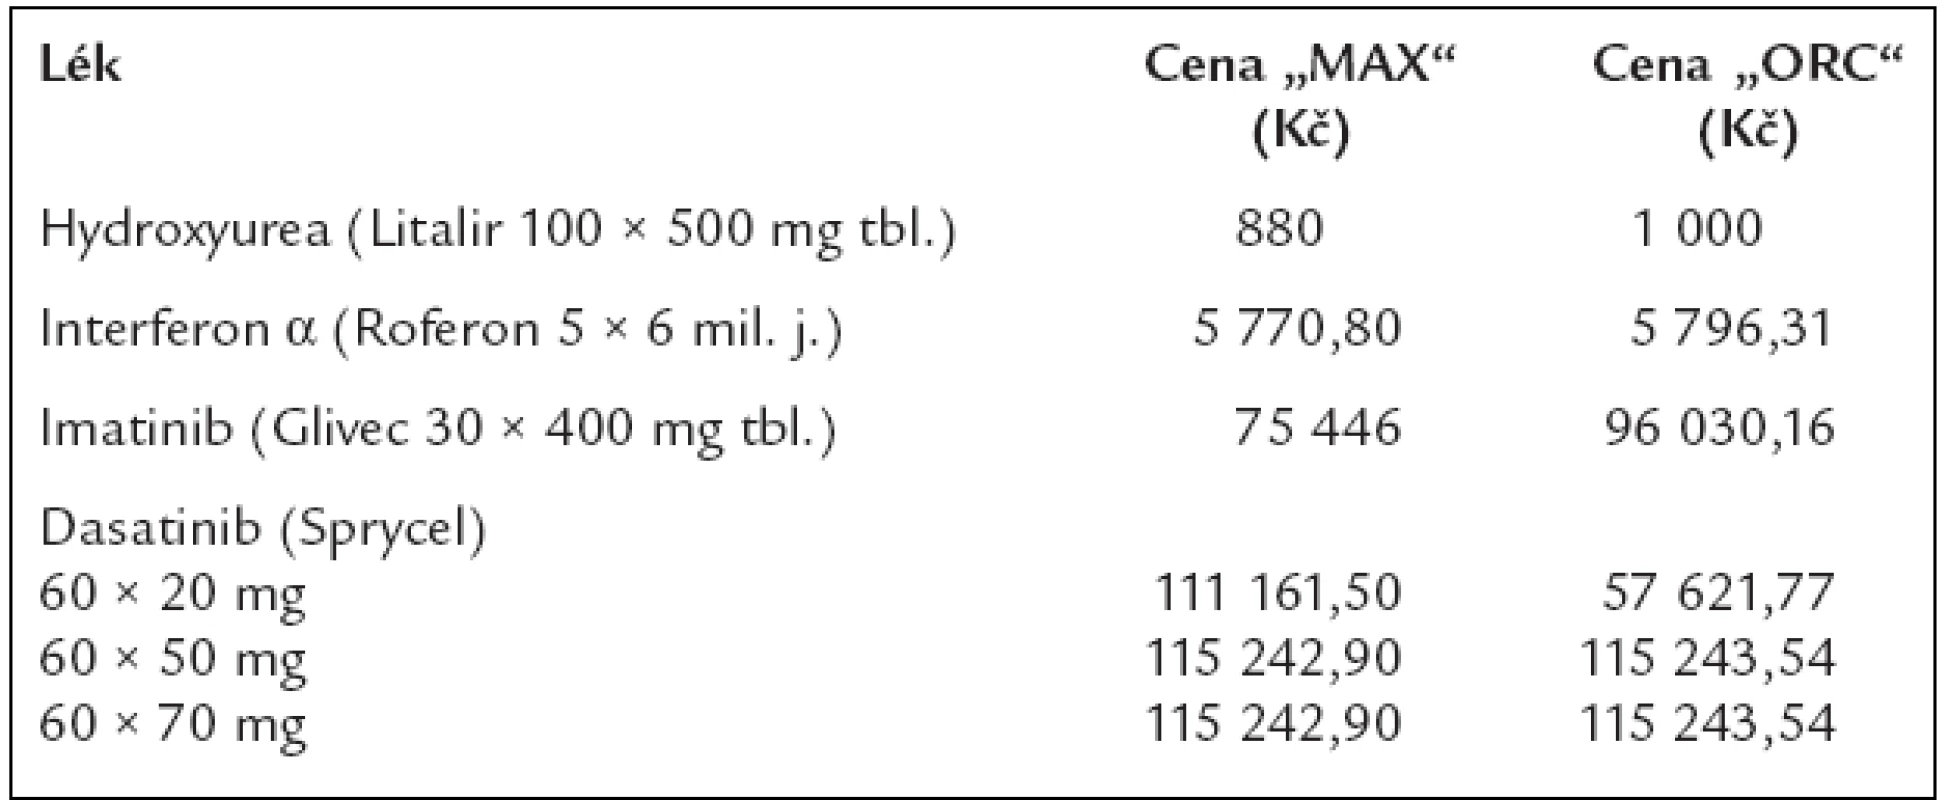 Ceny 1 balení léků, používaných pro léčbu chronické myeloidní leukemie dle číselníku VZP, platného od 1. 8. 2006, s výjimkou preparátu dasatinib, u něhož byla cena stanovena až v dubnu roku 2007.